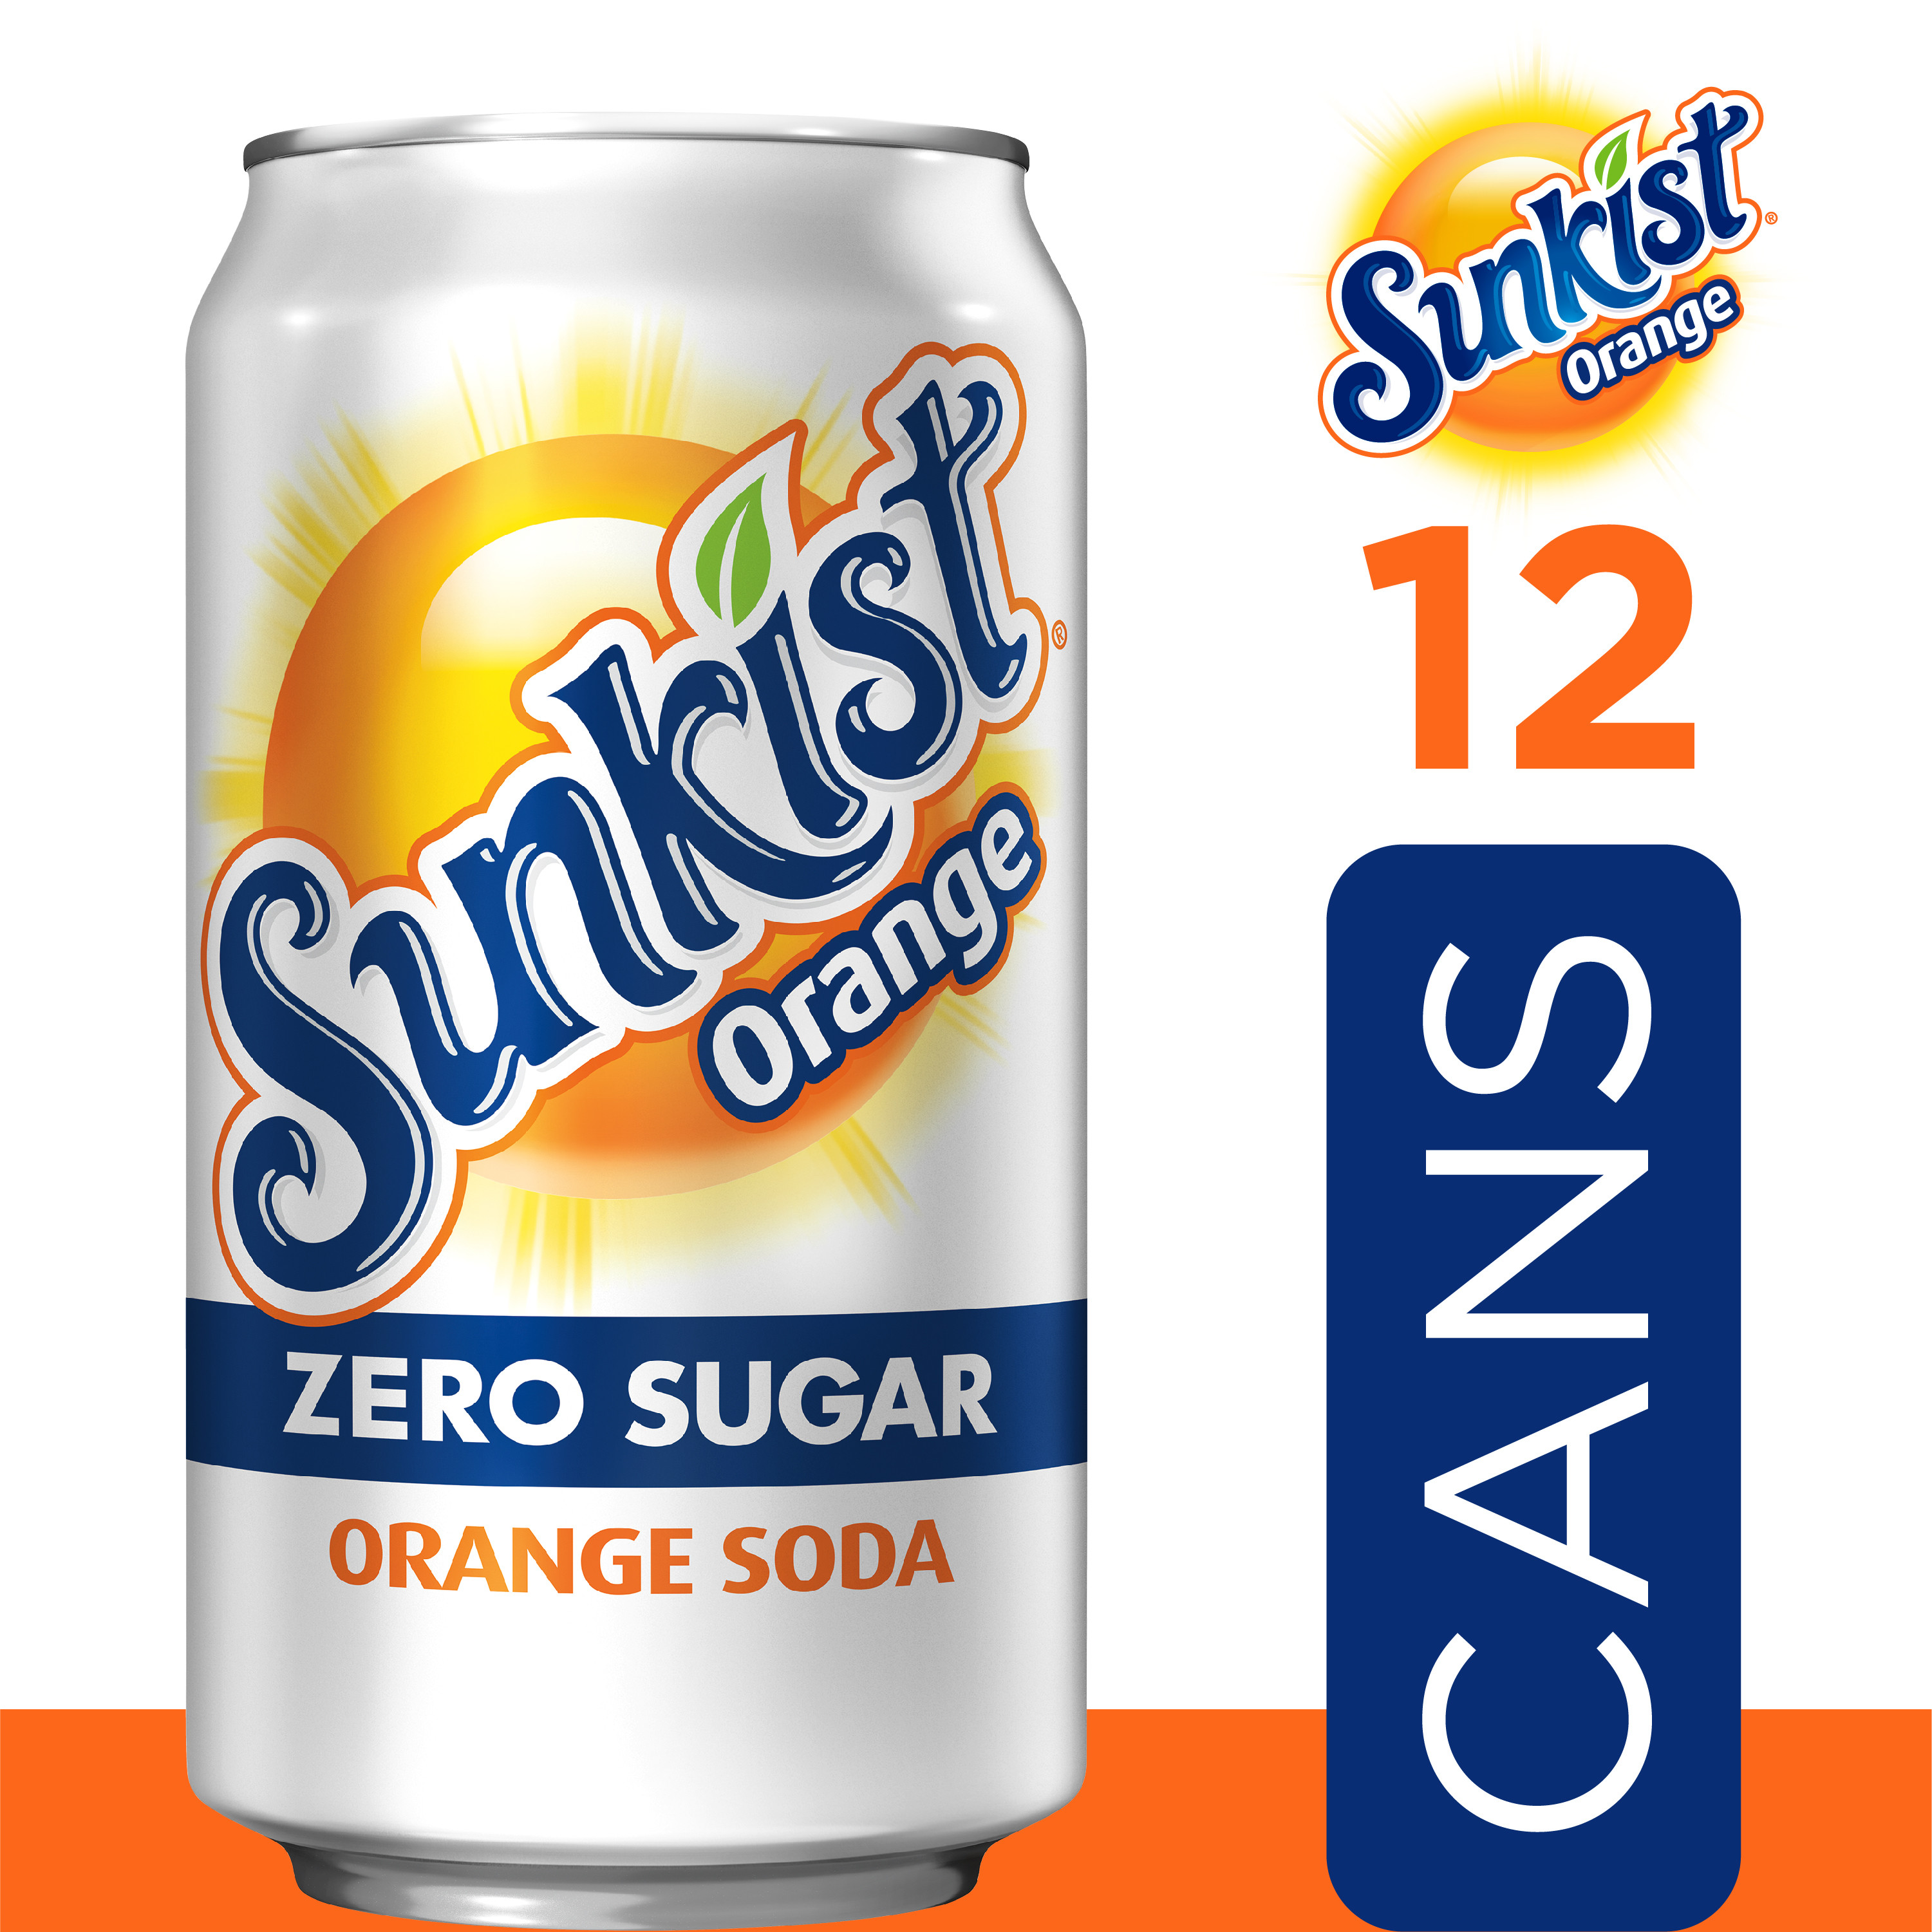 Sunkist Zero Sugar Orange Soda Pop, 12 fl oz, 12 Pack Cans - image 3 of 13